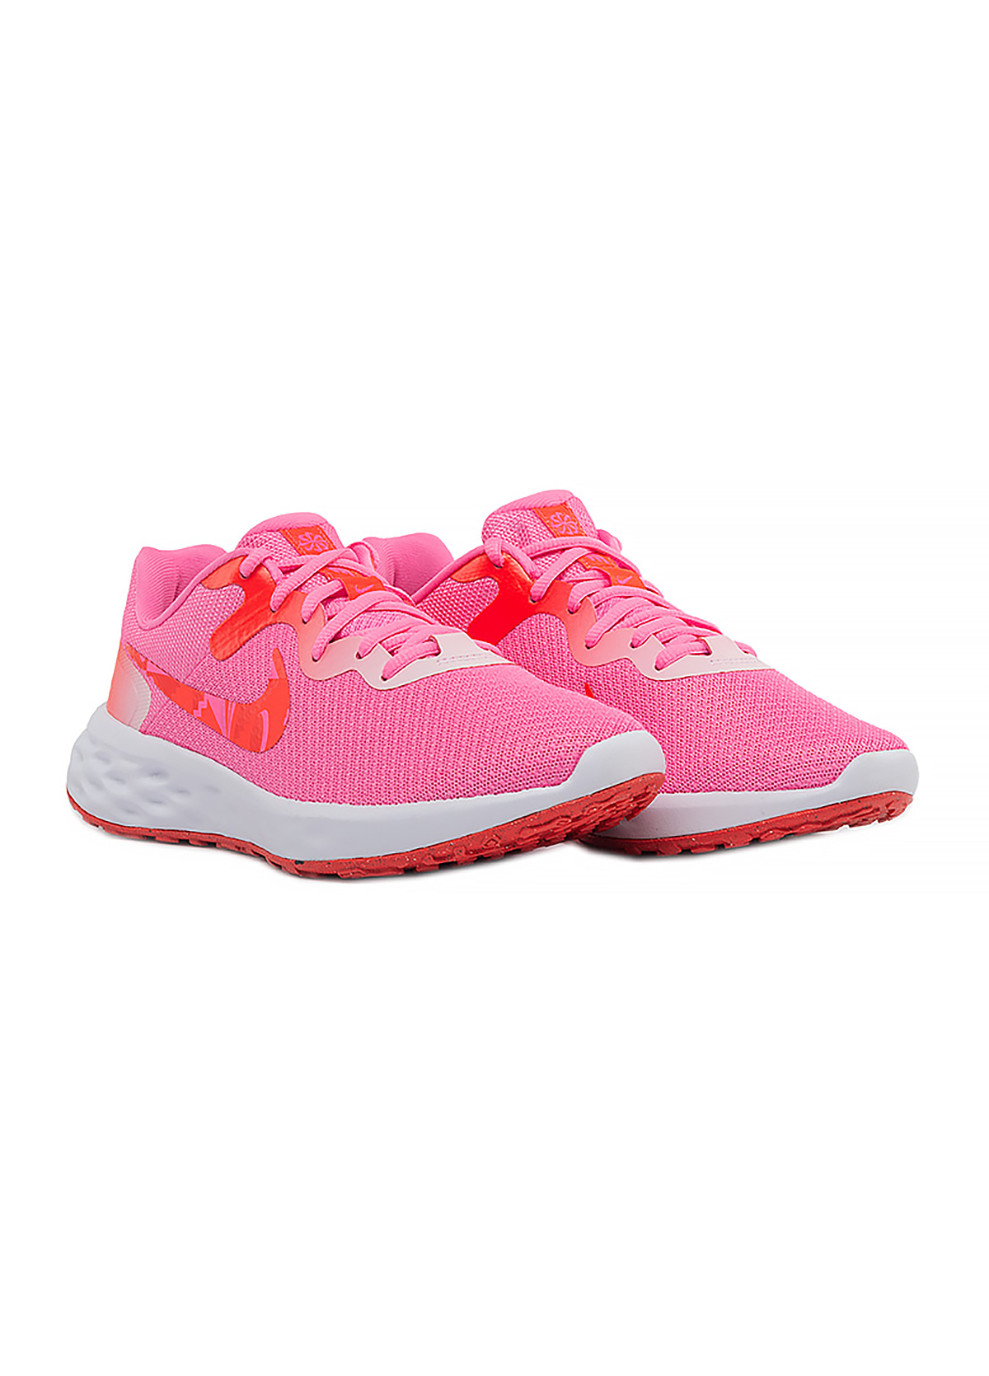 Розовые демисезонные женские кроссовки w revolution 6 nn розовый Nike